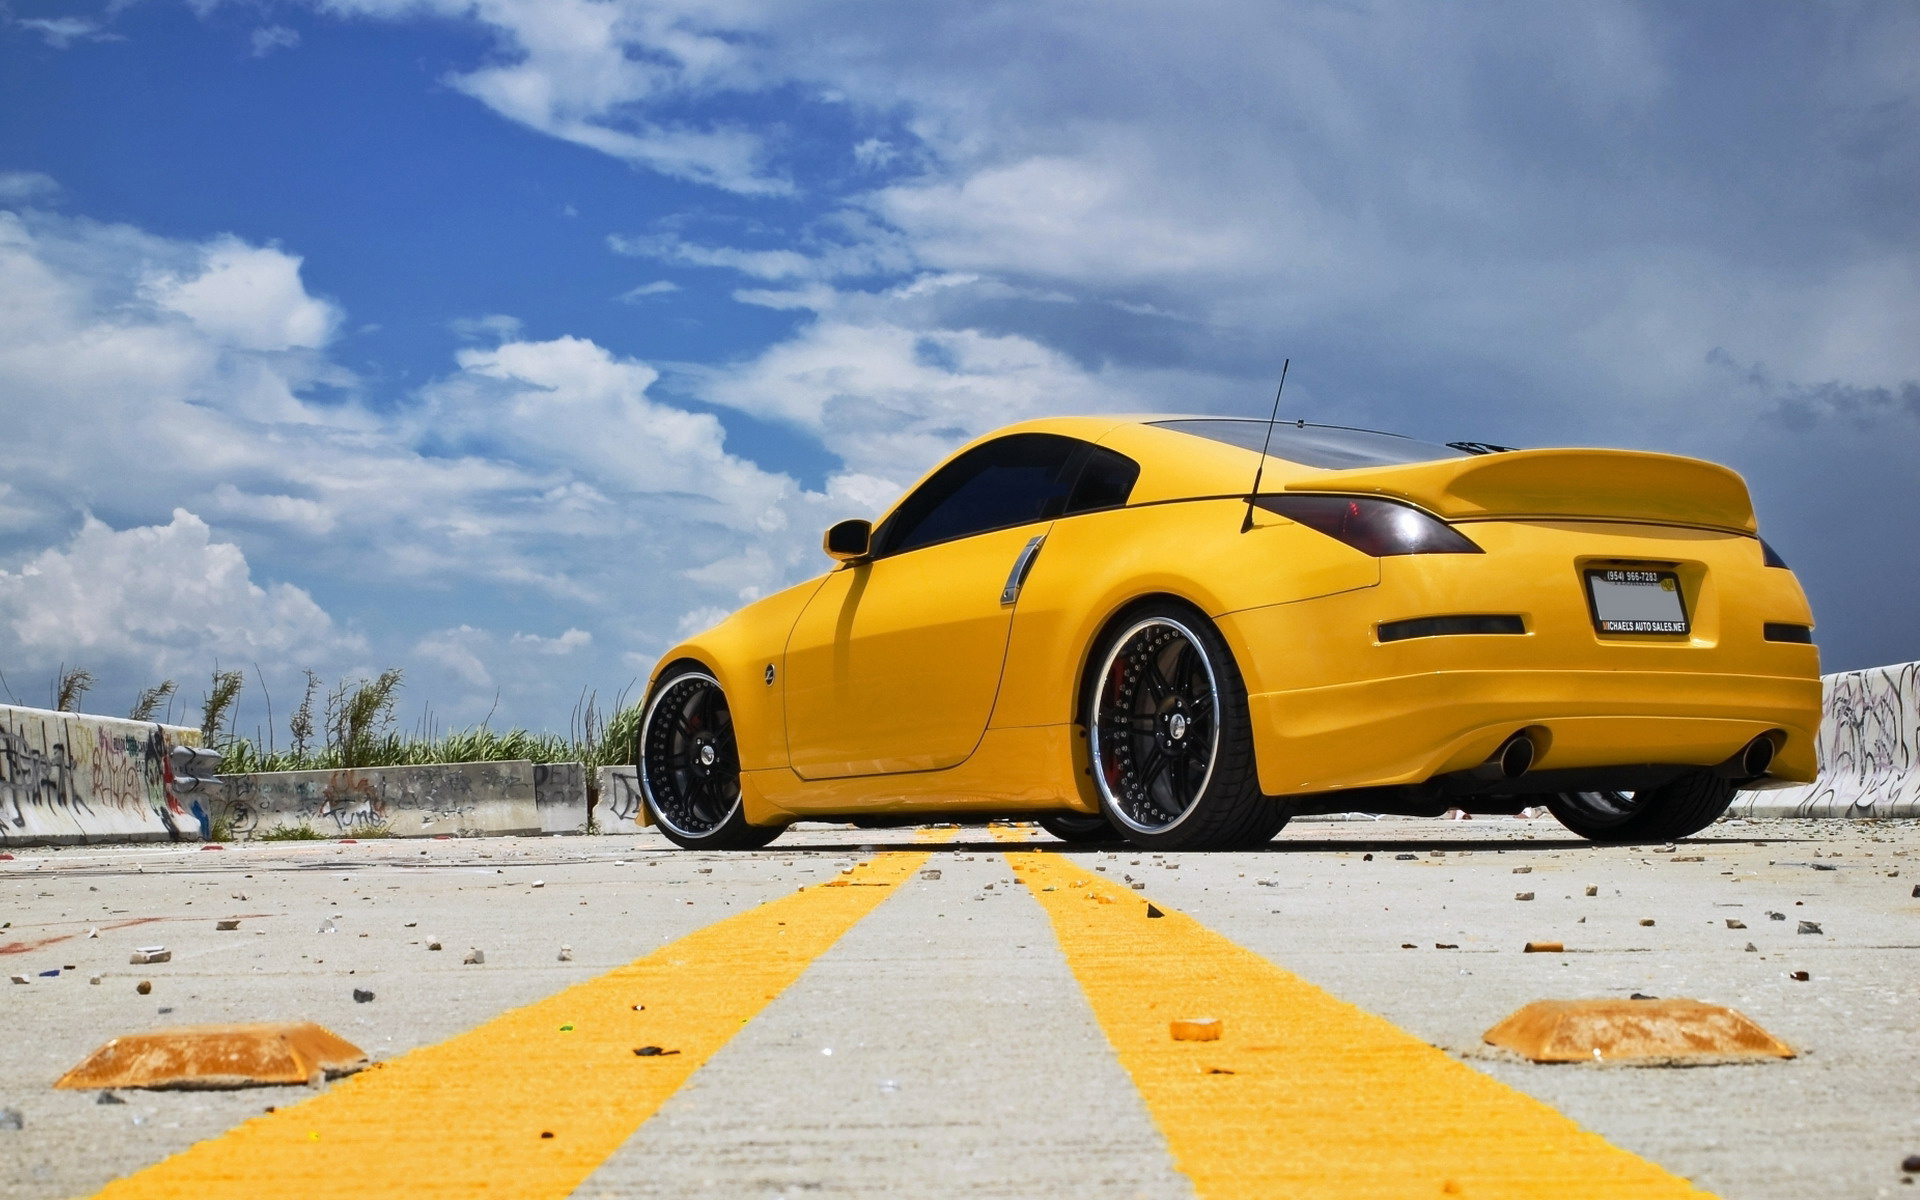 Картинка: Автомобиль, Nissan, 350Z, жёлтый, небо, облака, дорога, мусор